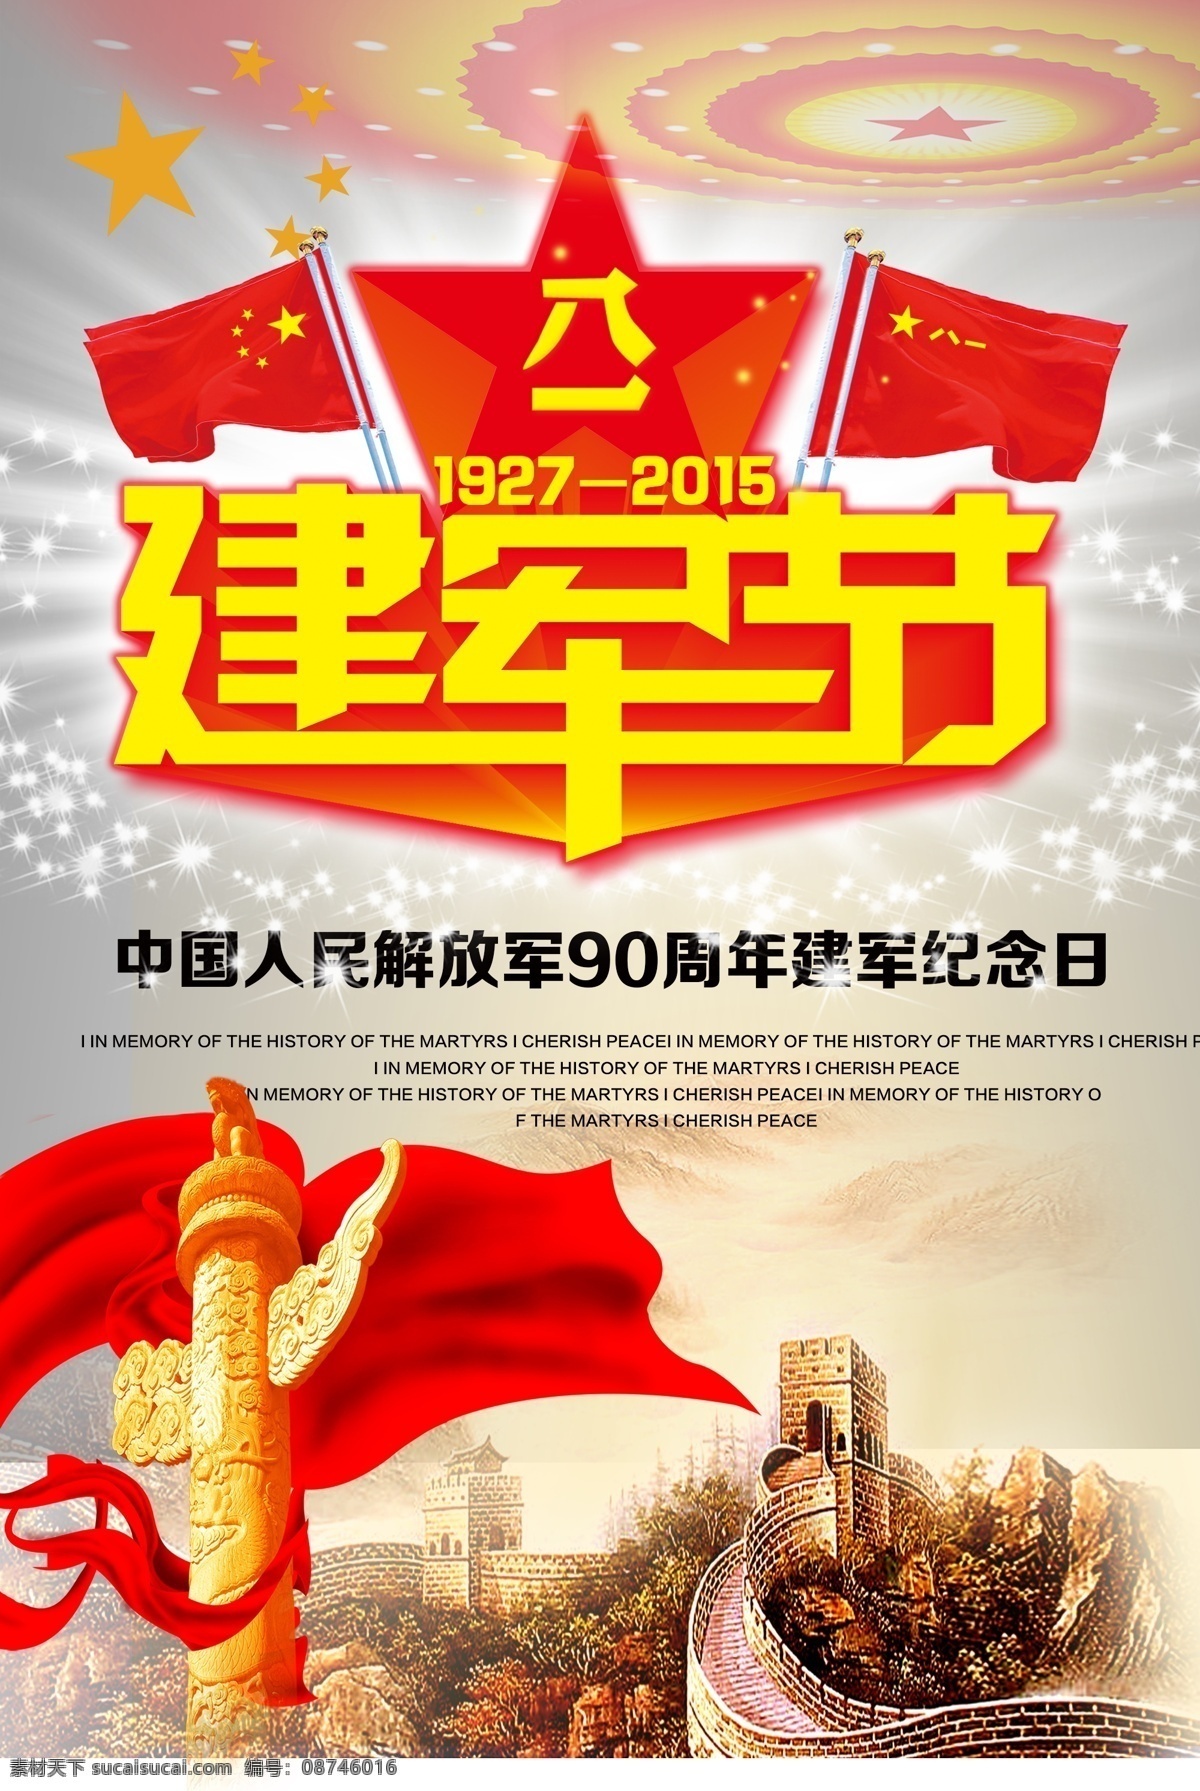 建军节海报 建军节 海报 纪念日 周年 长城 华表 八一 中国 文化艺术 节日庆祝